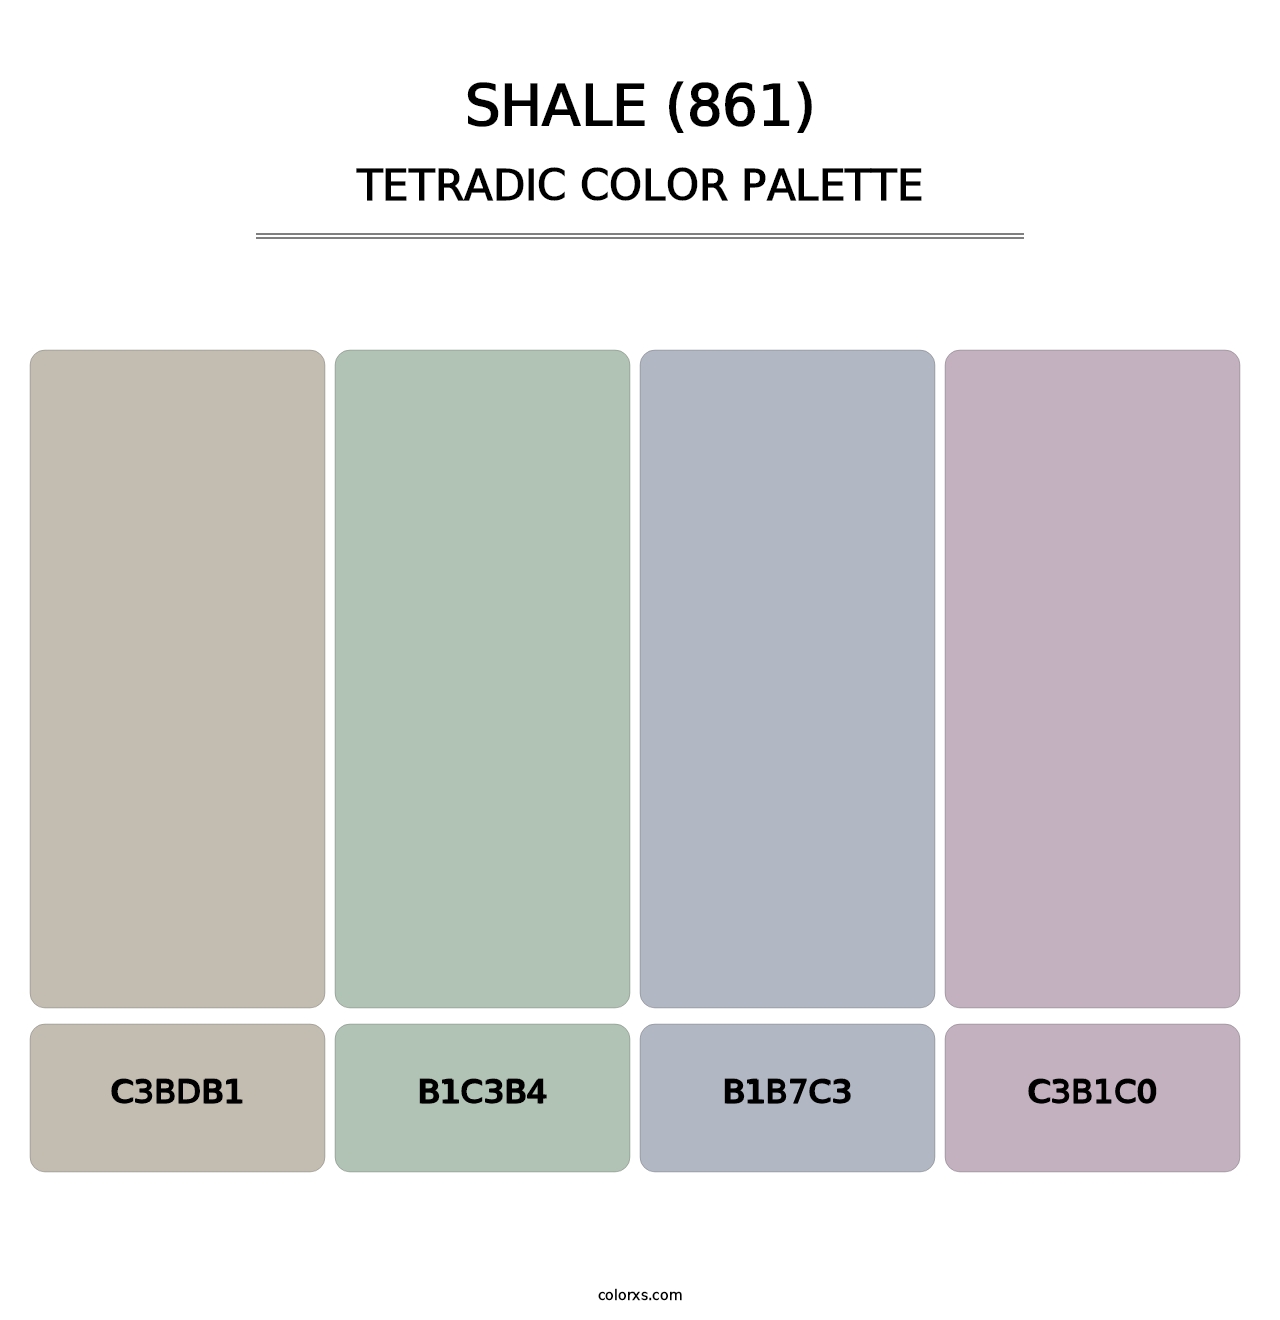 Shale (861) - Tetradic Color Palette